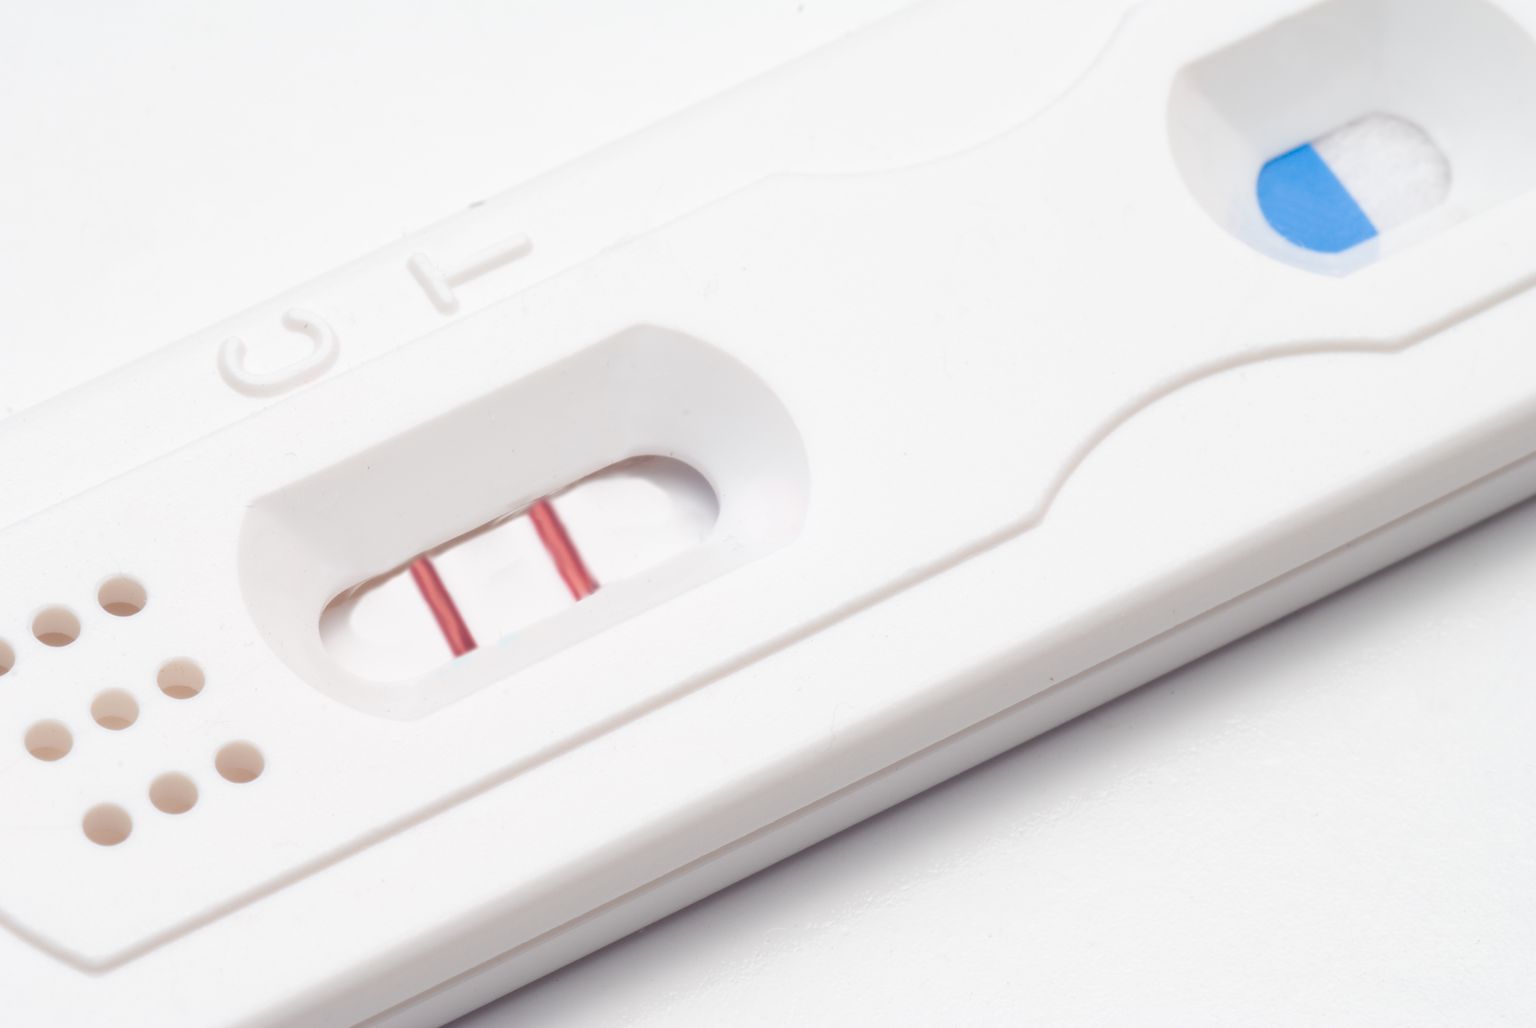 Eesti Naistearstide Selts seisab jätkuvalt selle eest, et kõigil rasedatel ja sünnitajatel oleks õigus teha pereplaneerimise valikuid ilma riigi sekkumiseta.